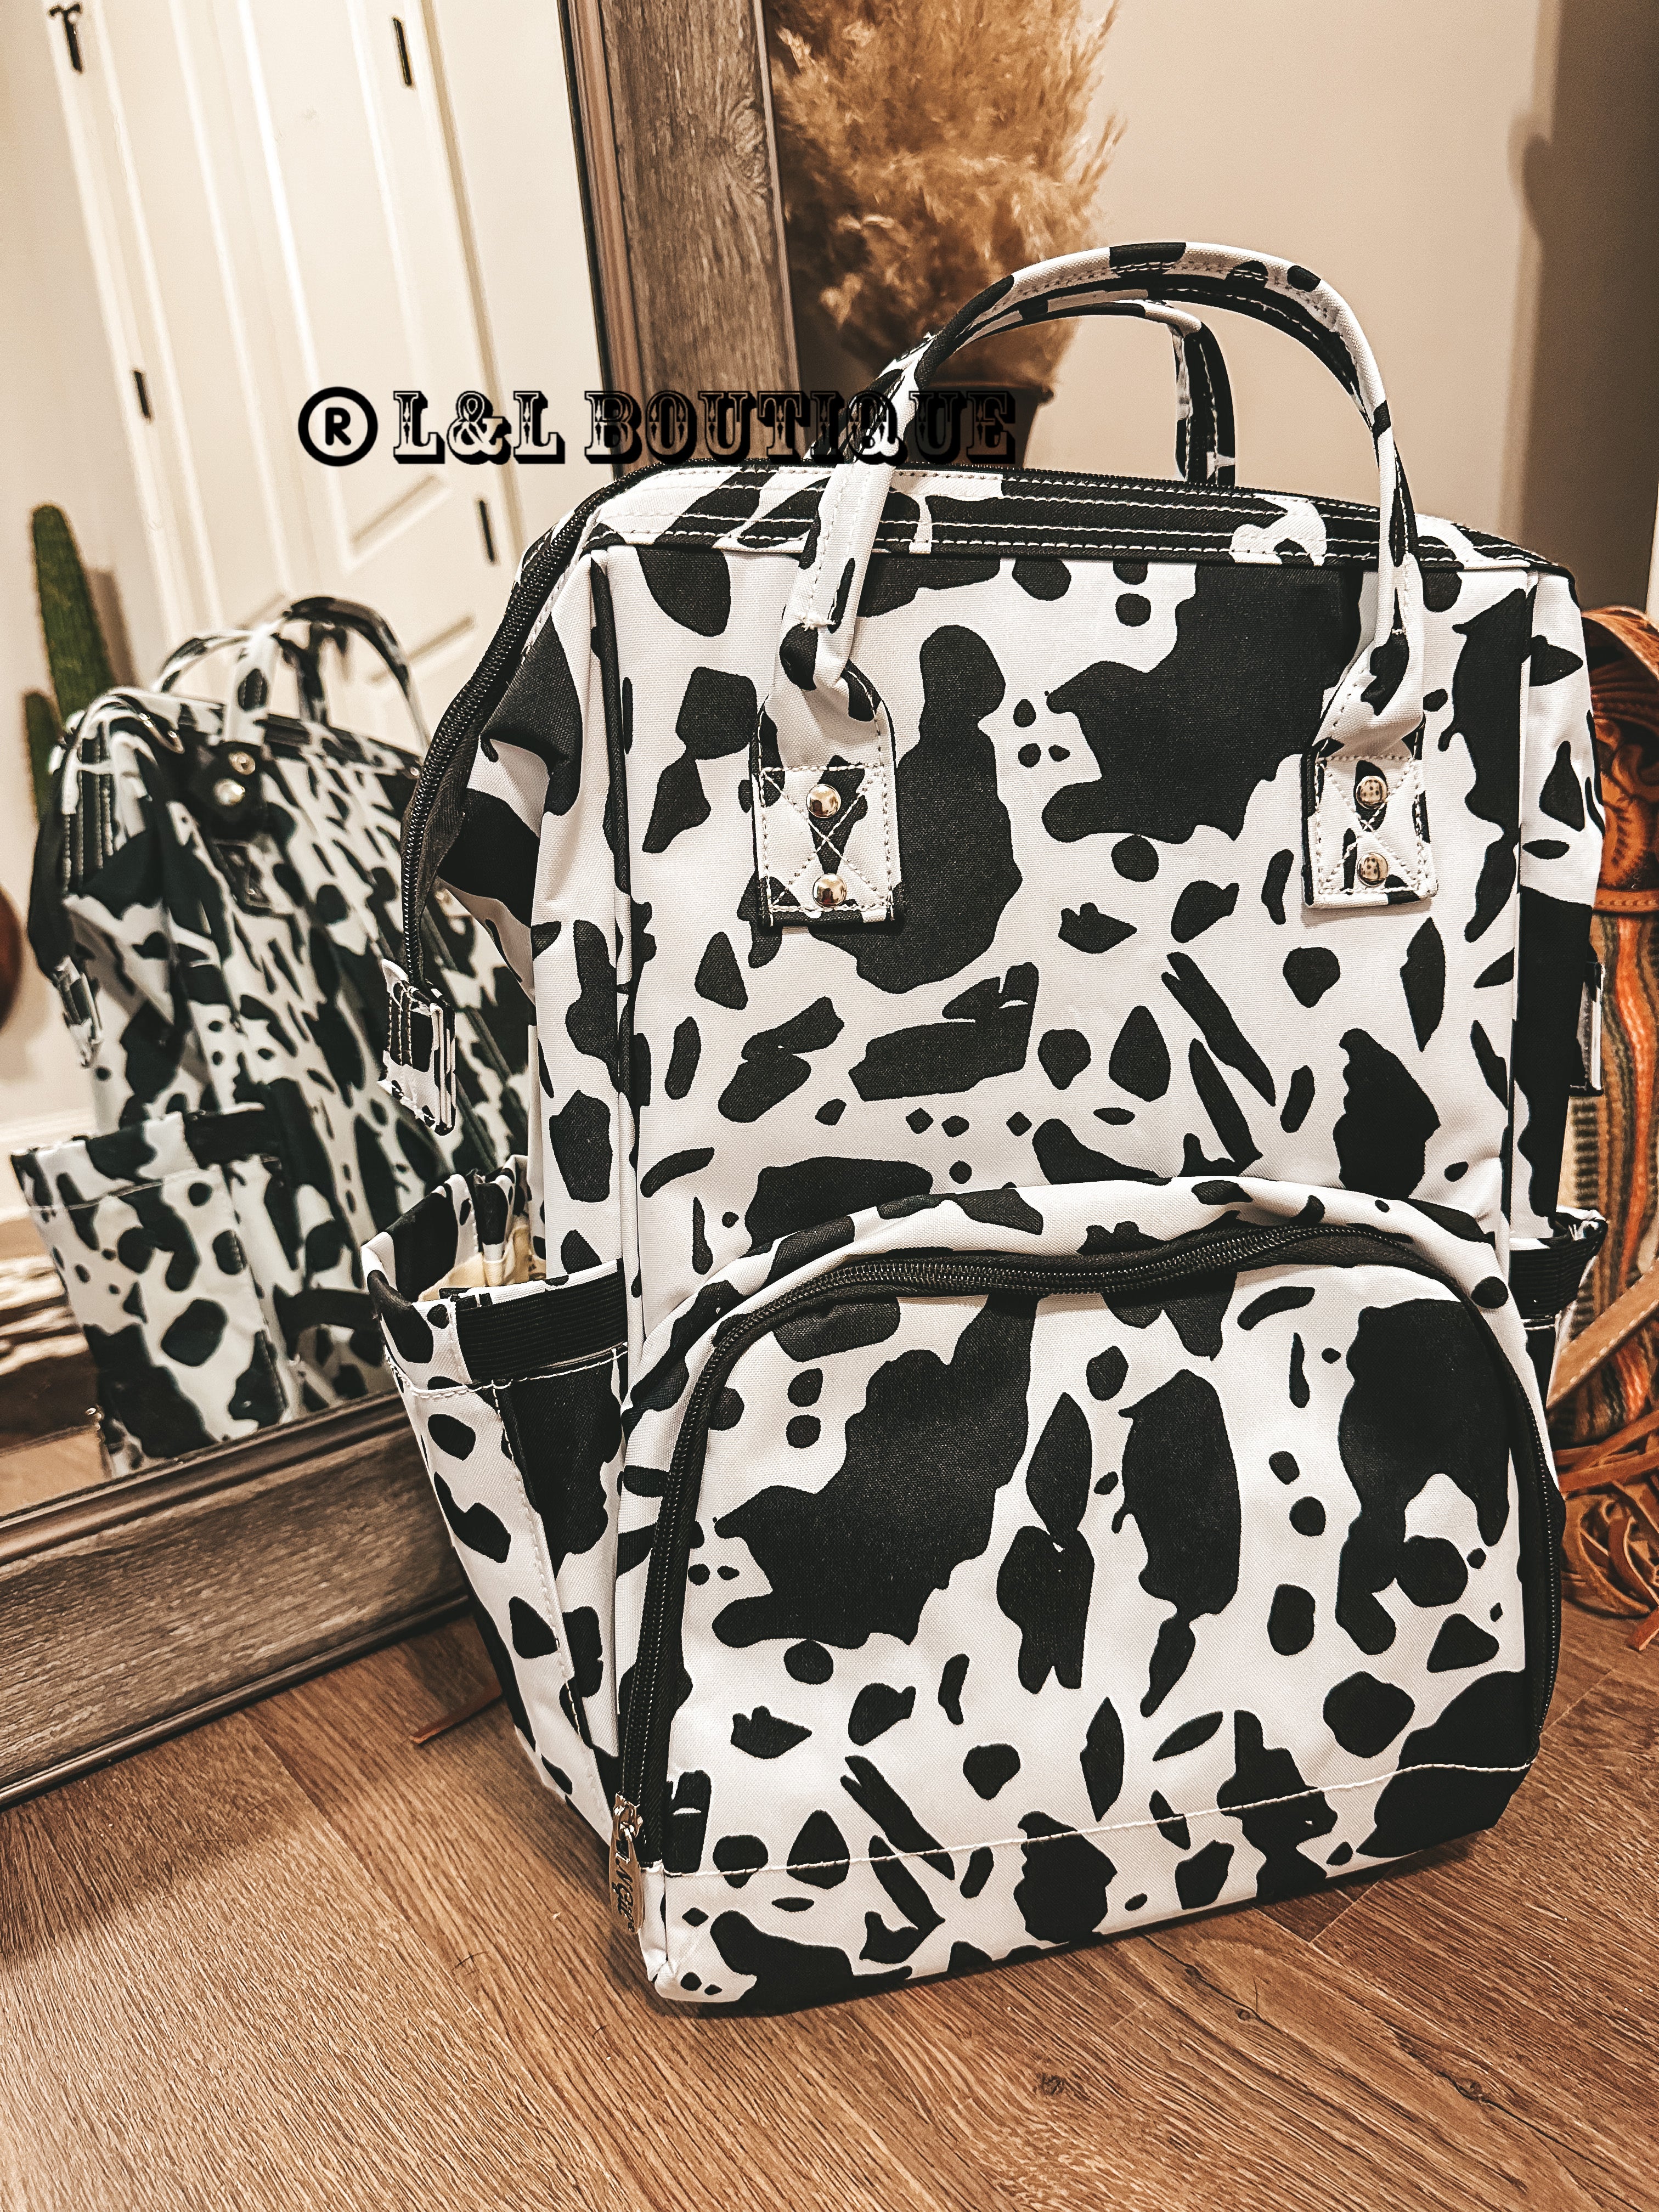 Cow Print | Tote Bag